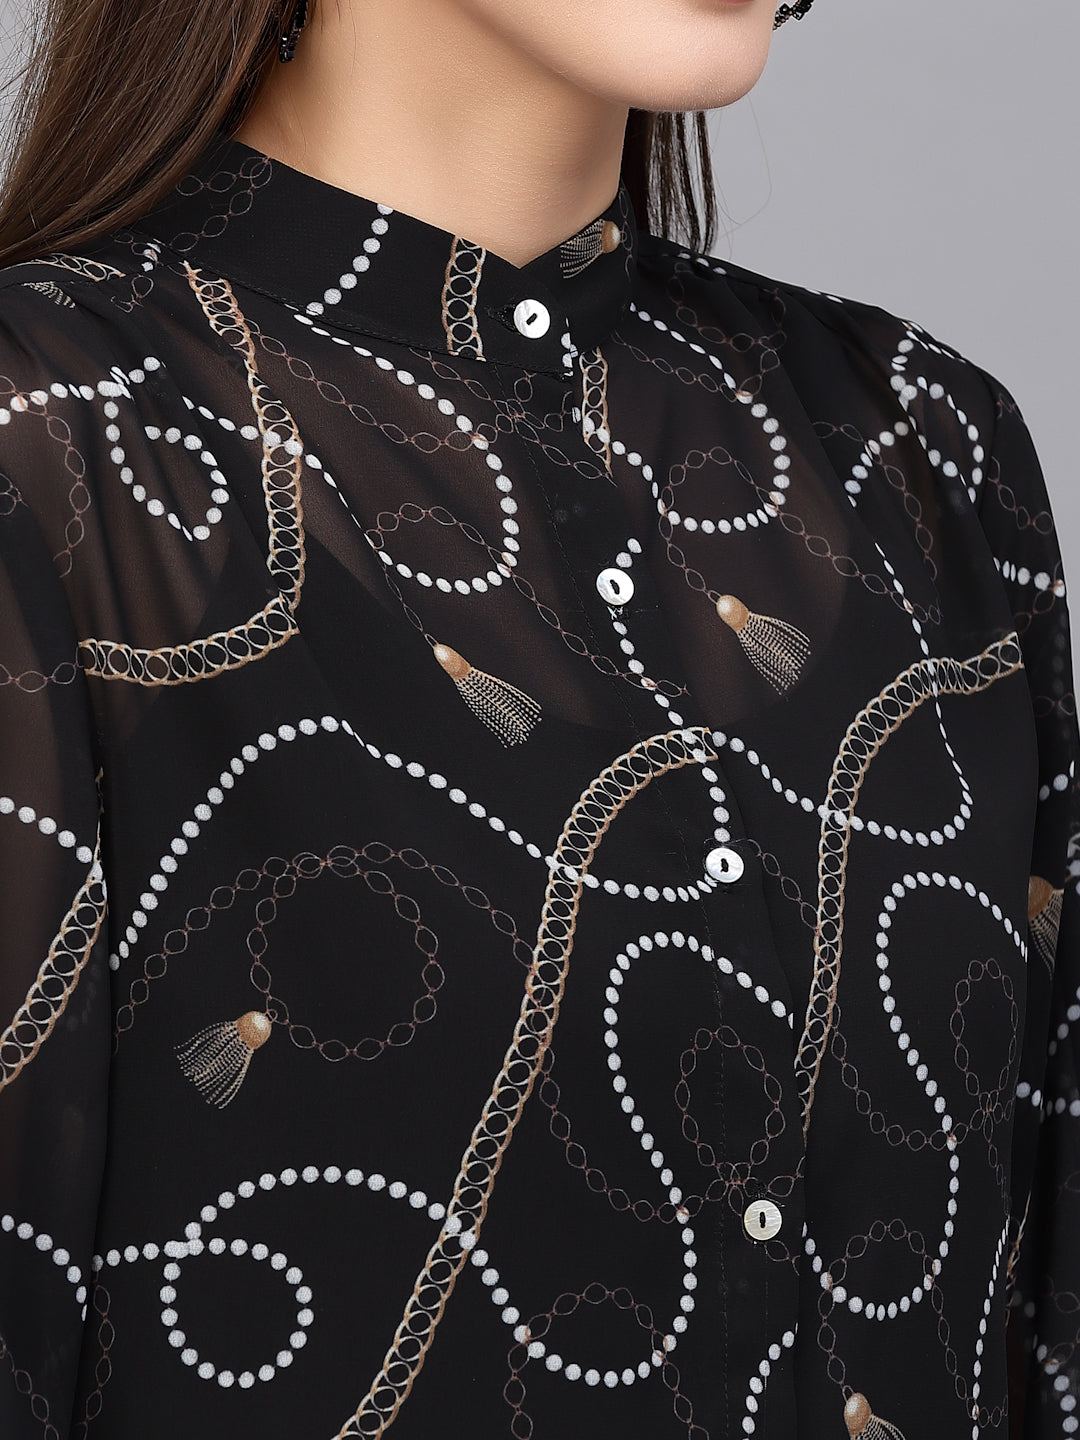 Valbone Women’s Black Georgette Printed Shirt Full Sleeves